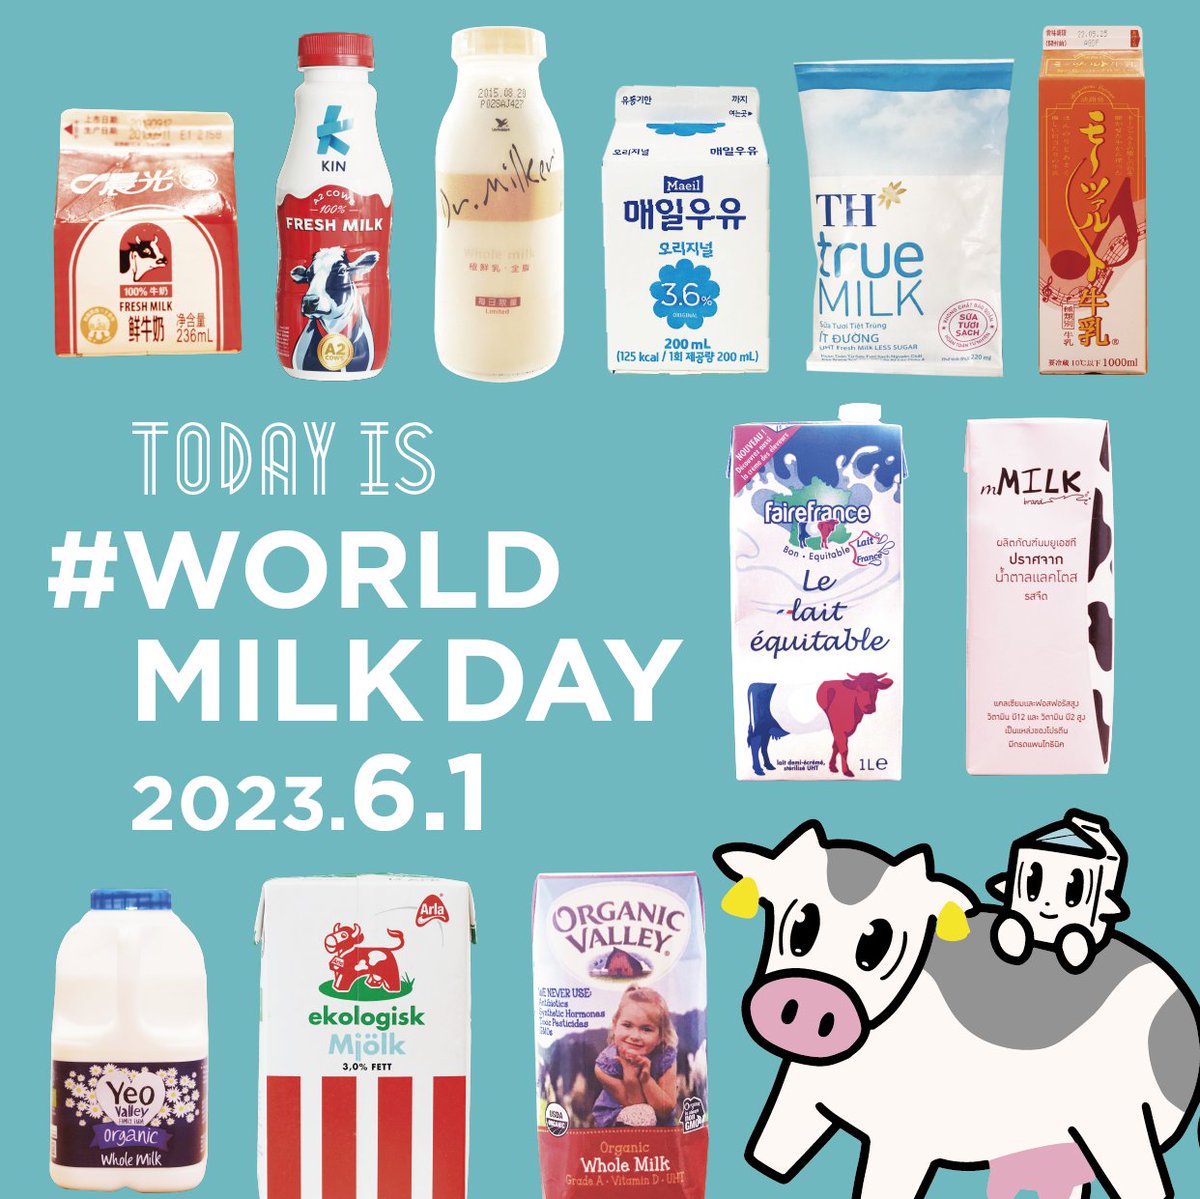 ＼今日6月1日は、世界牛乳の日(^^)／

牛乳で世界がひとつになる日です🥛
牛乳に関わるすべての方に、牛に感謝していただきますのこころを忘れずに✨

牛乳飲んでほっとひと息ついてがんばっていきましょう！

#世界牛乳の日 #牛乳の日 #ワールドミルクデー #牛乳  #worldmilkday #enjoydairy